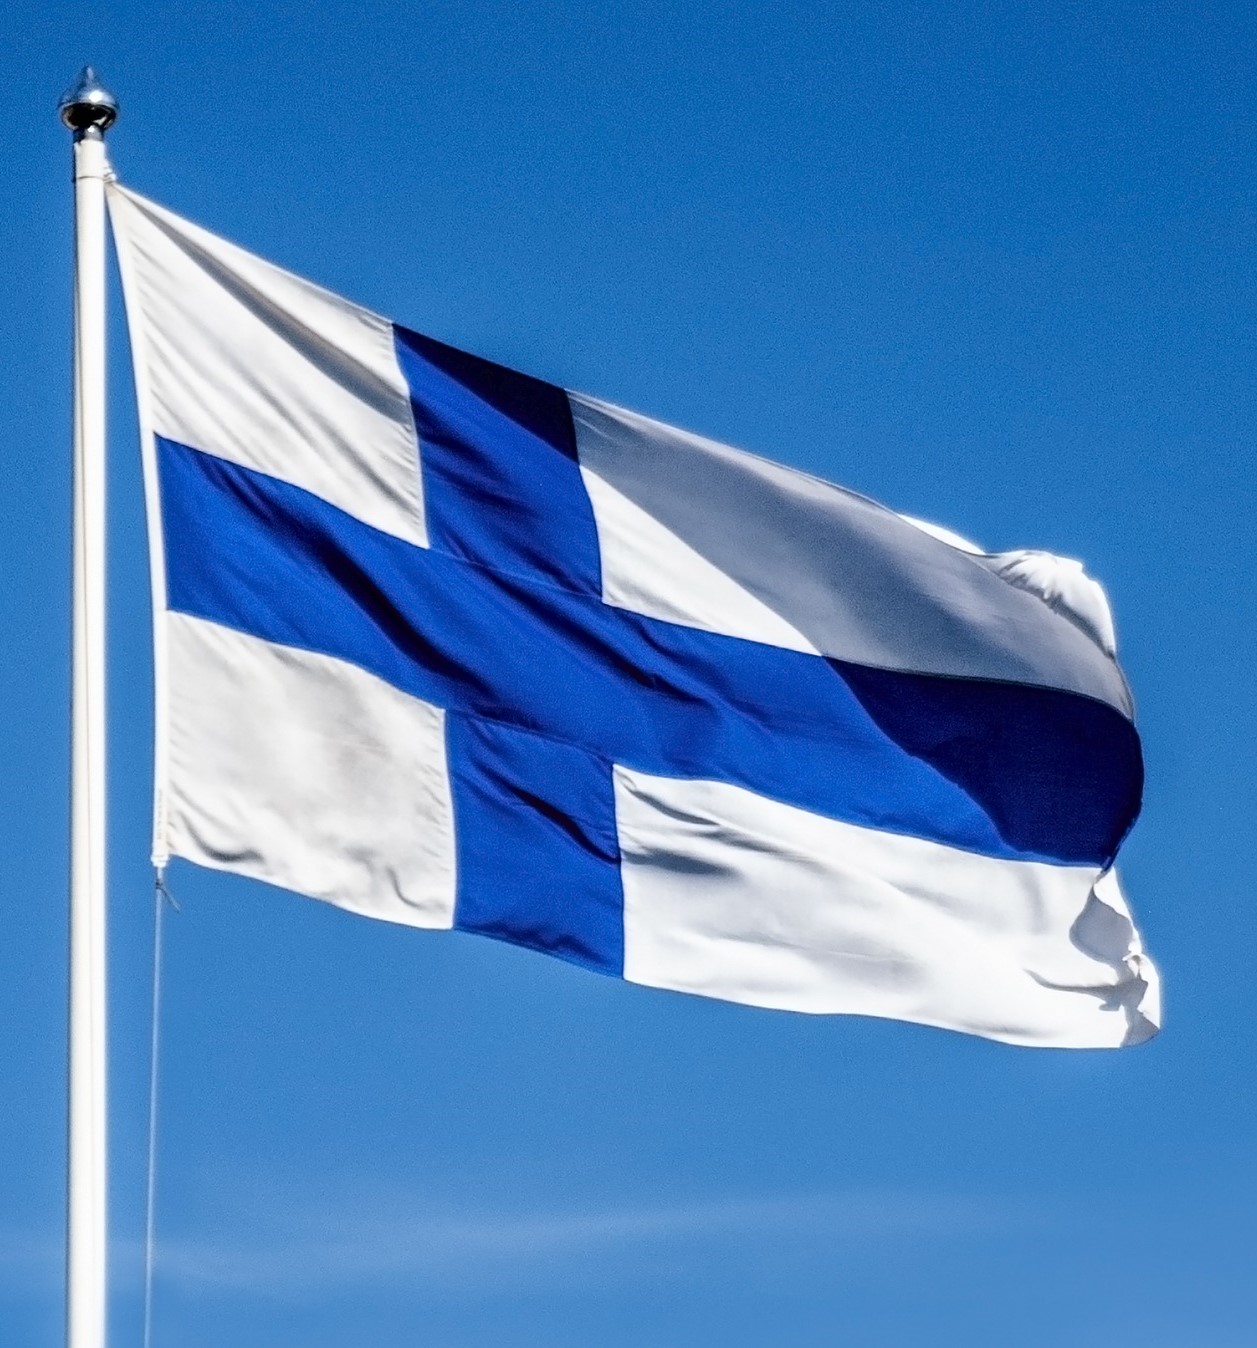 Suomen lippu liehuu taivaalla.